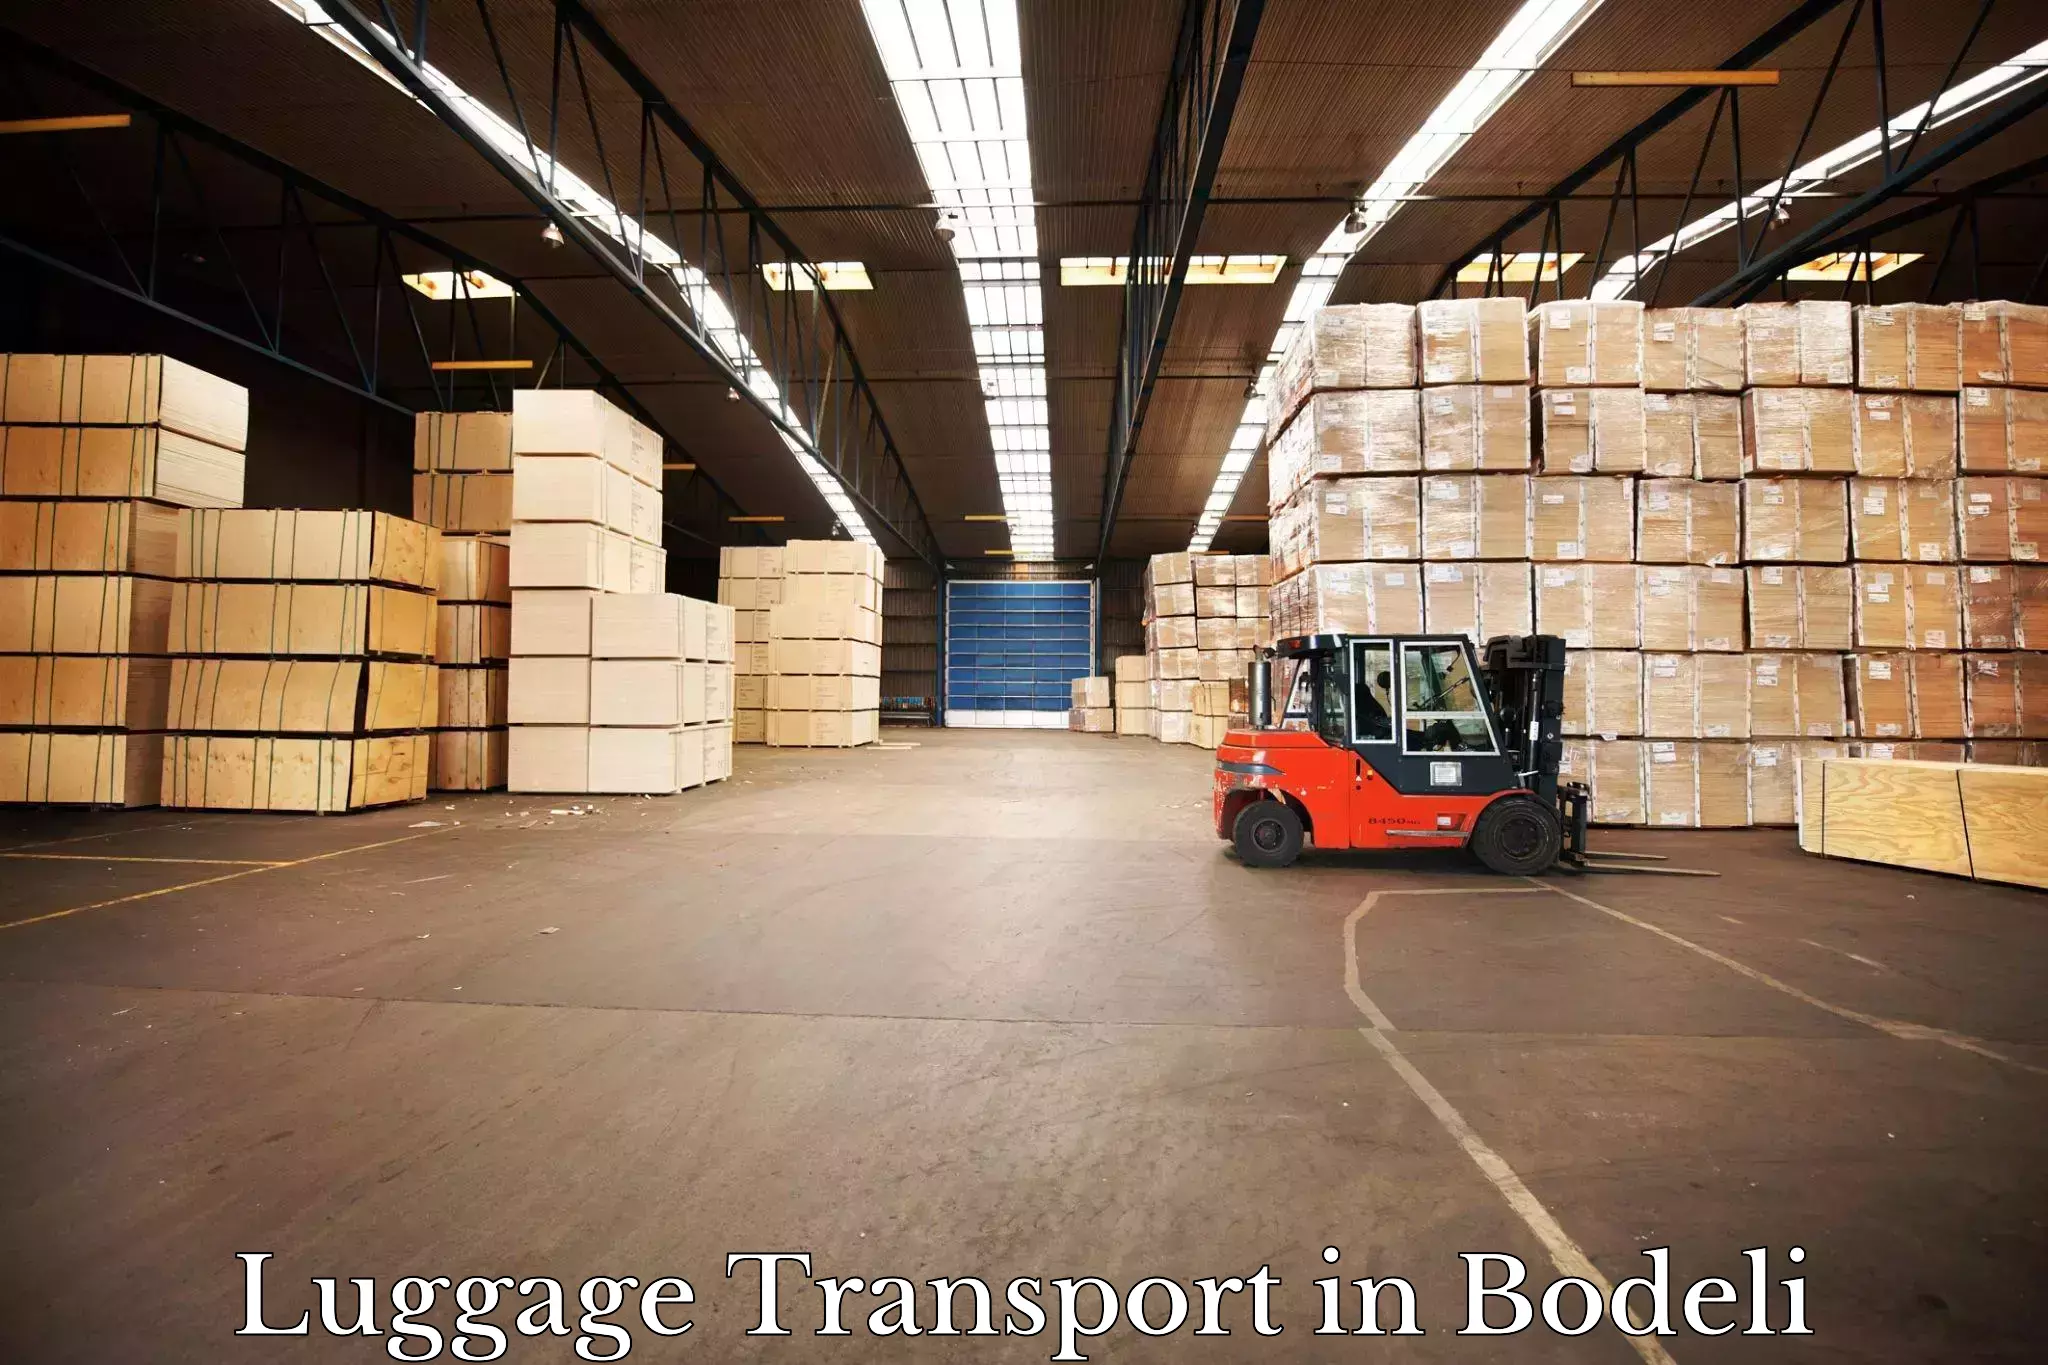 Urban luggage shipping in Bodeli